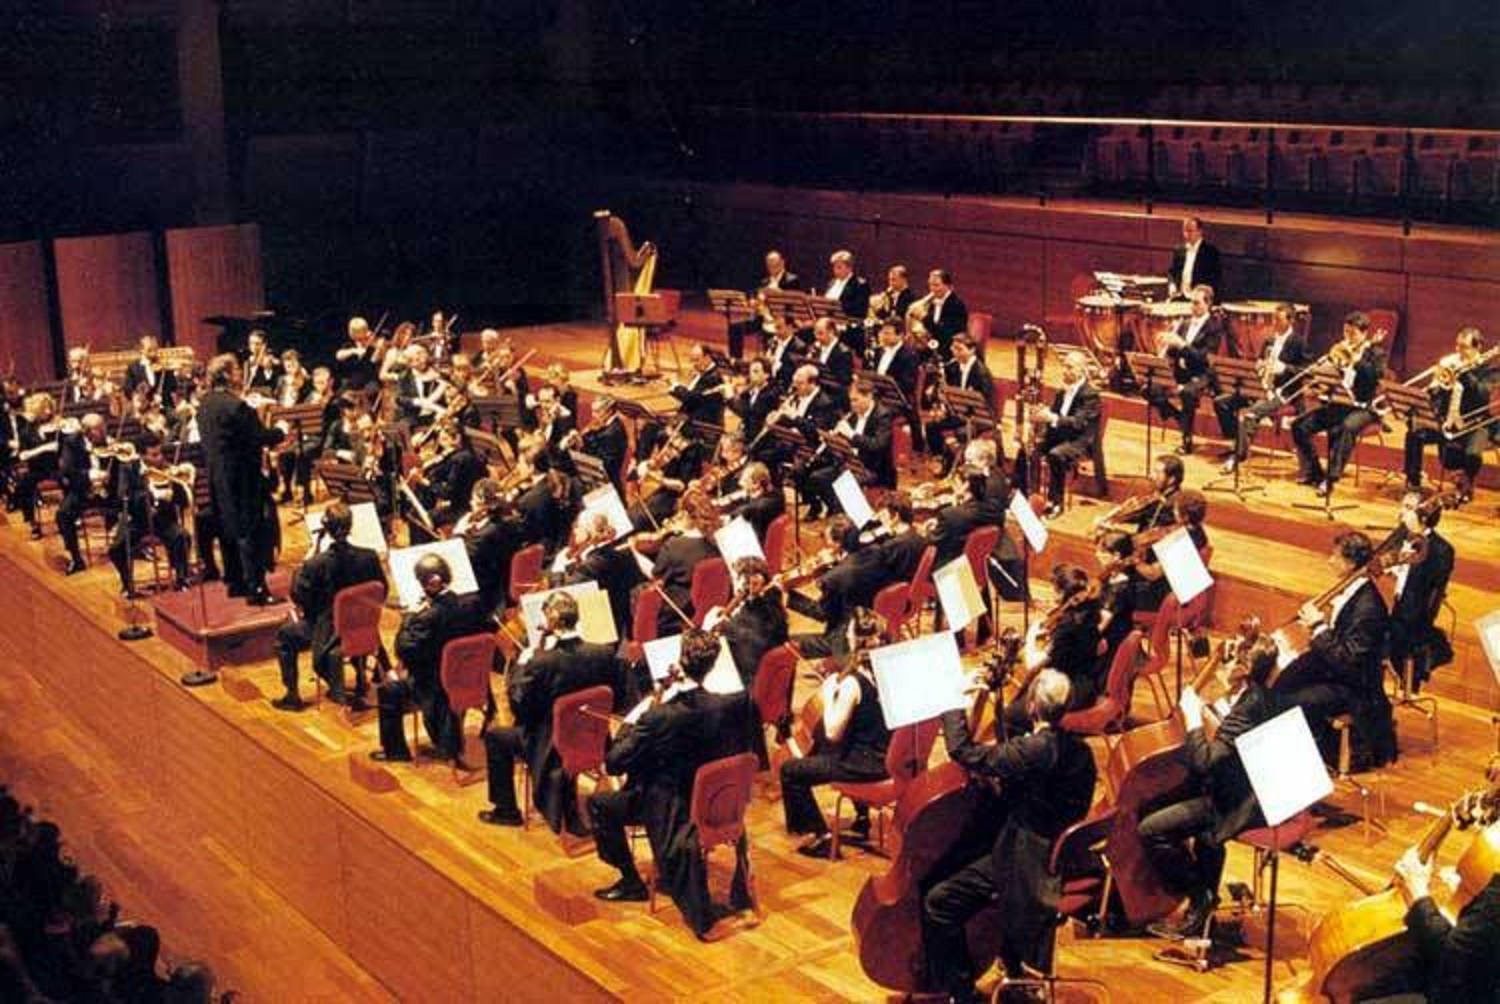 S’orchestra clàssica in limba sarda